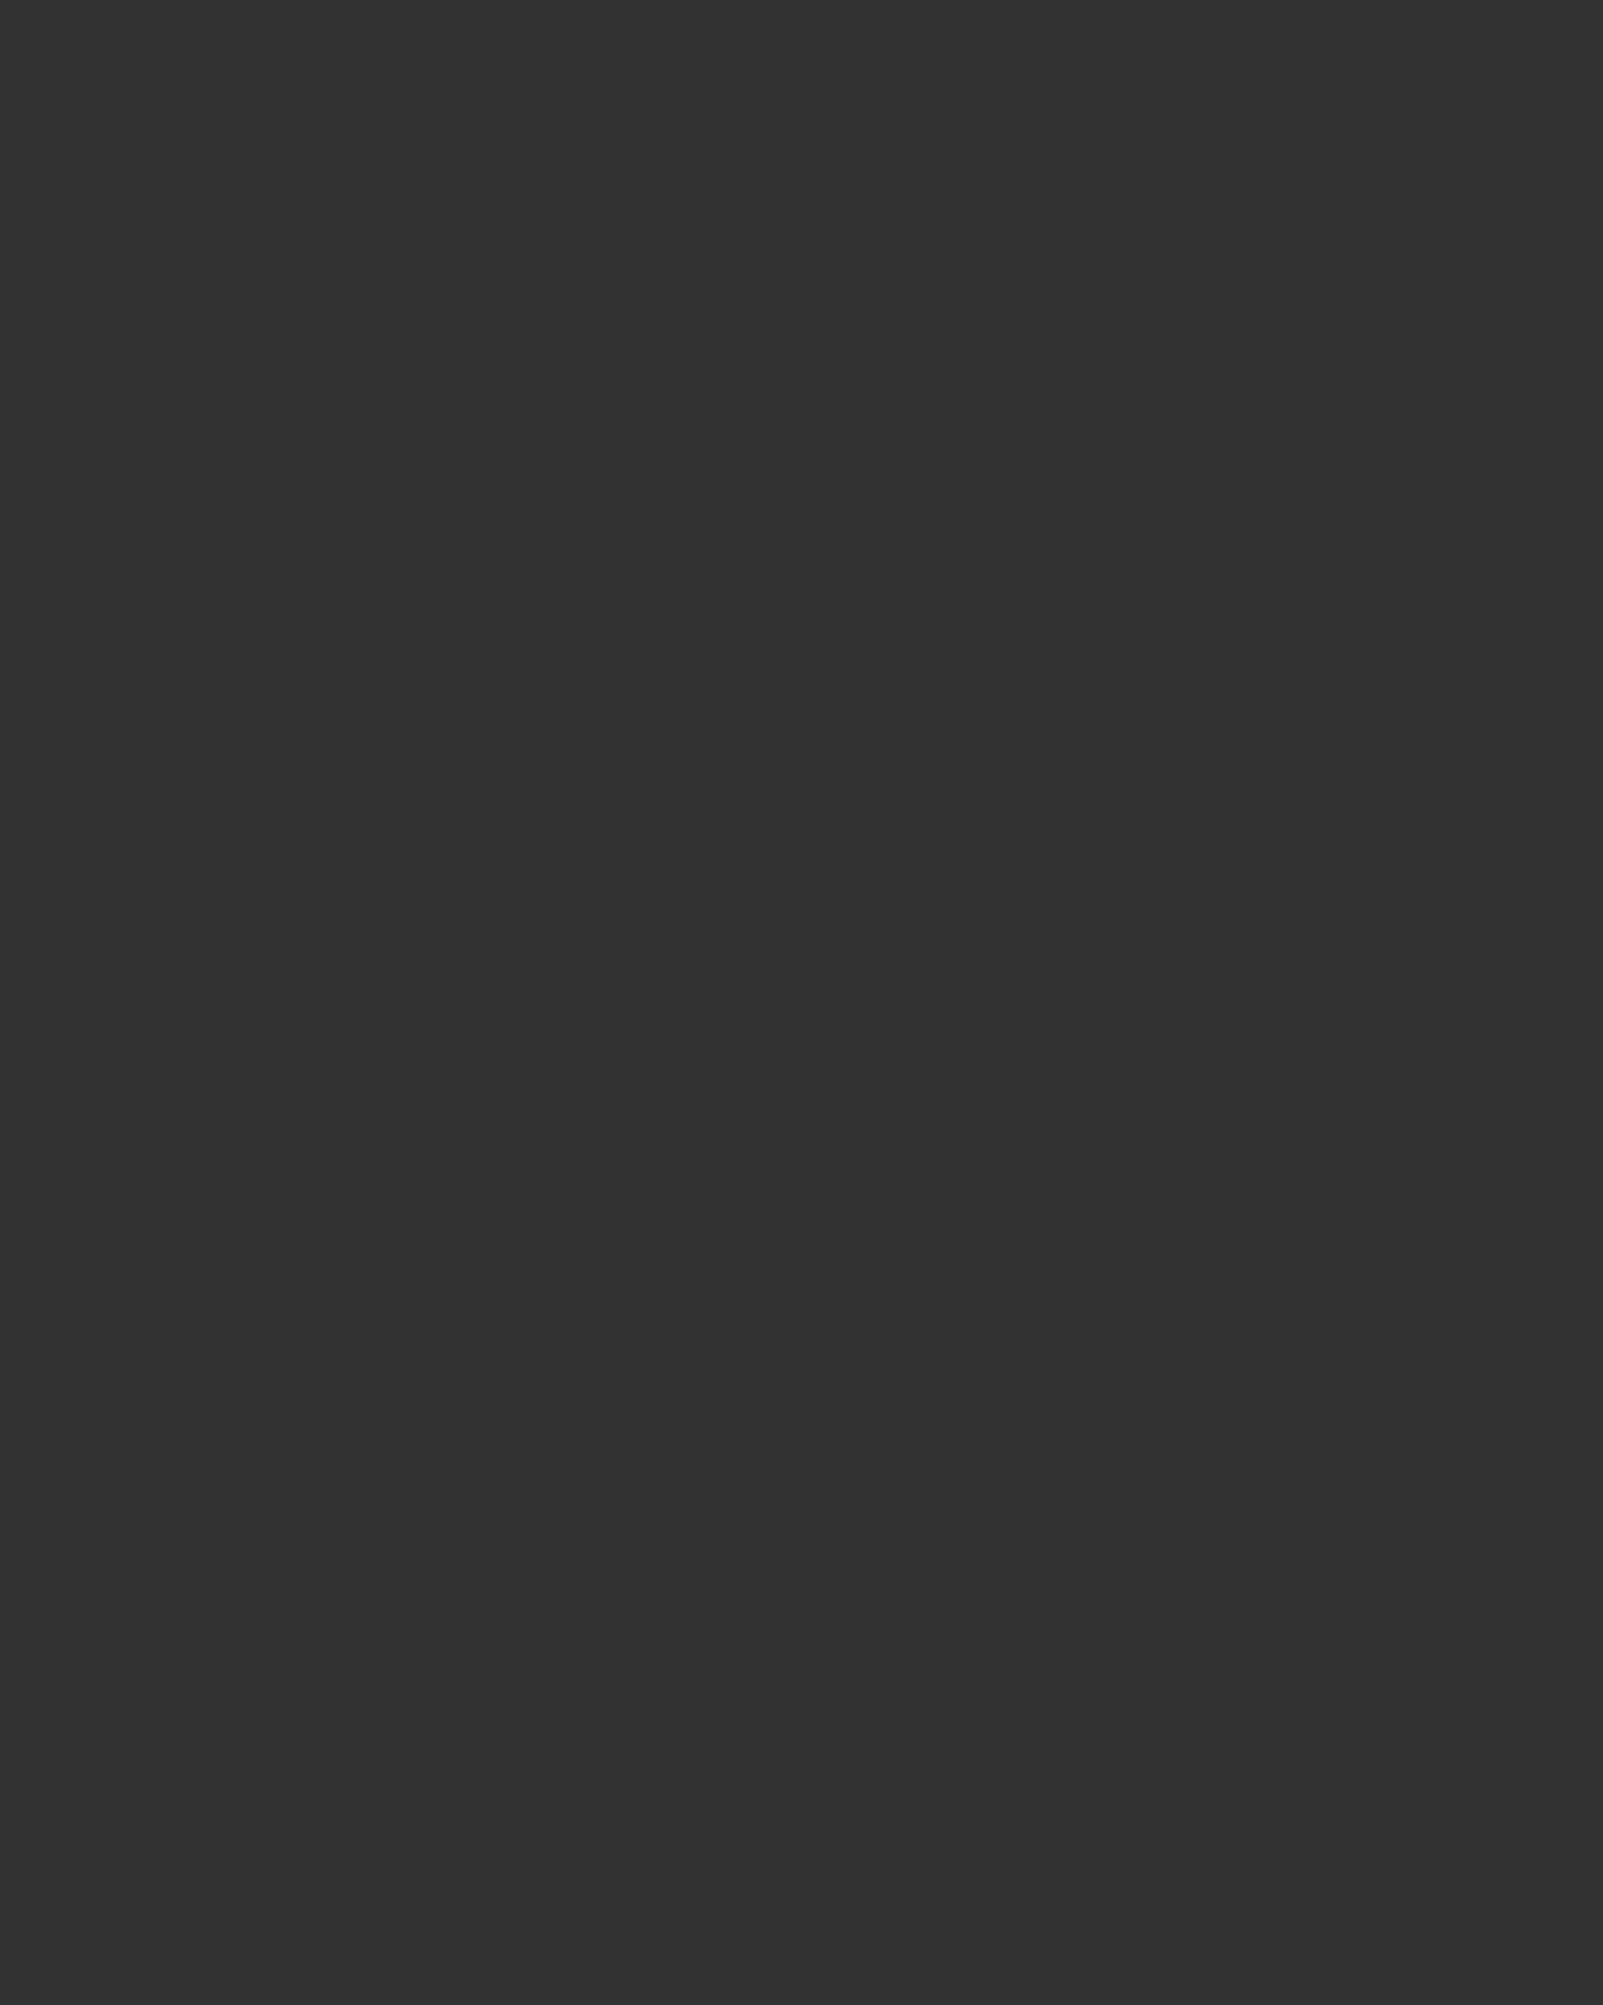 Итальянская актриса и певица Софи Лорен на церемонии вручения премии «Золотое сердце». Москва, 2005 год. Фотография: Федор Савинцев / ИТАР-ТАСС